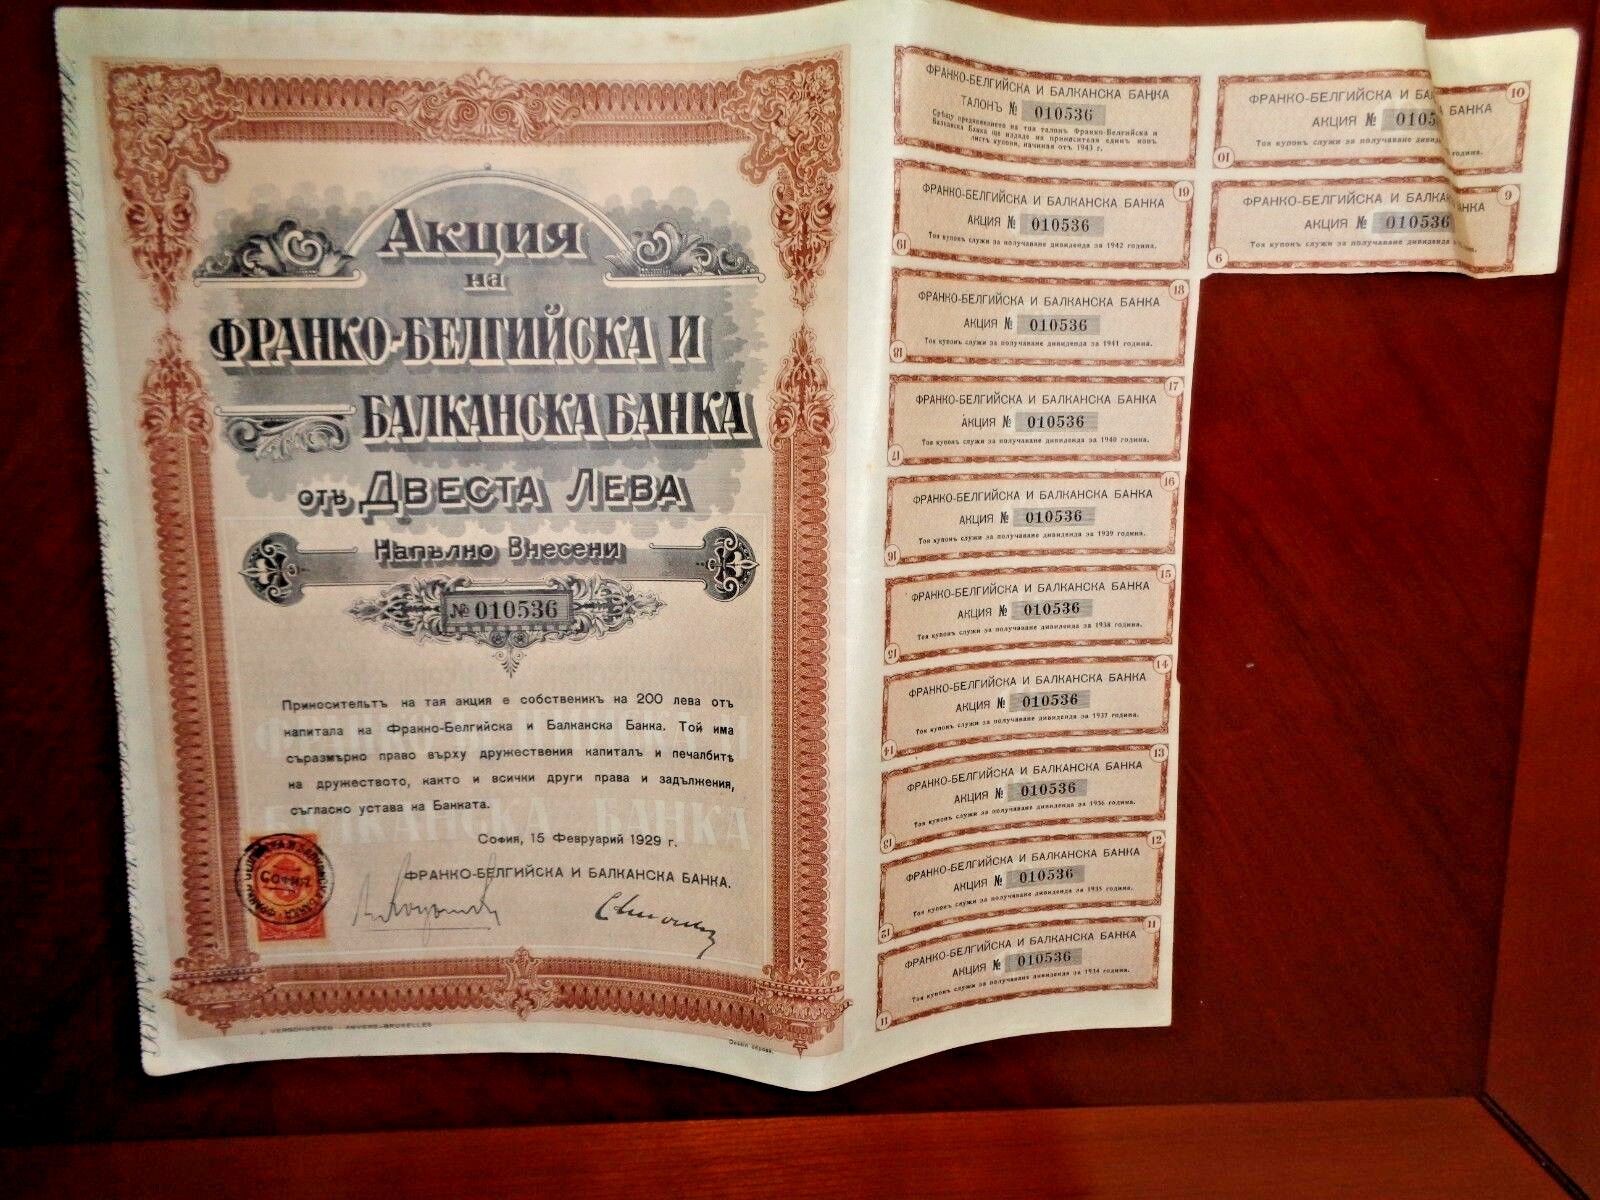 Banque Franco-belge et balkanique 1929 certificado de acciones Bulgaria